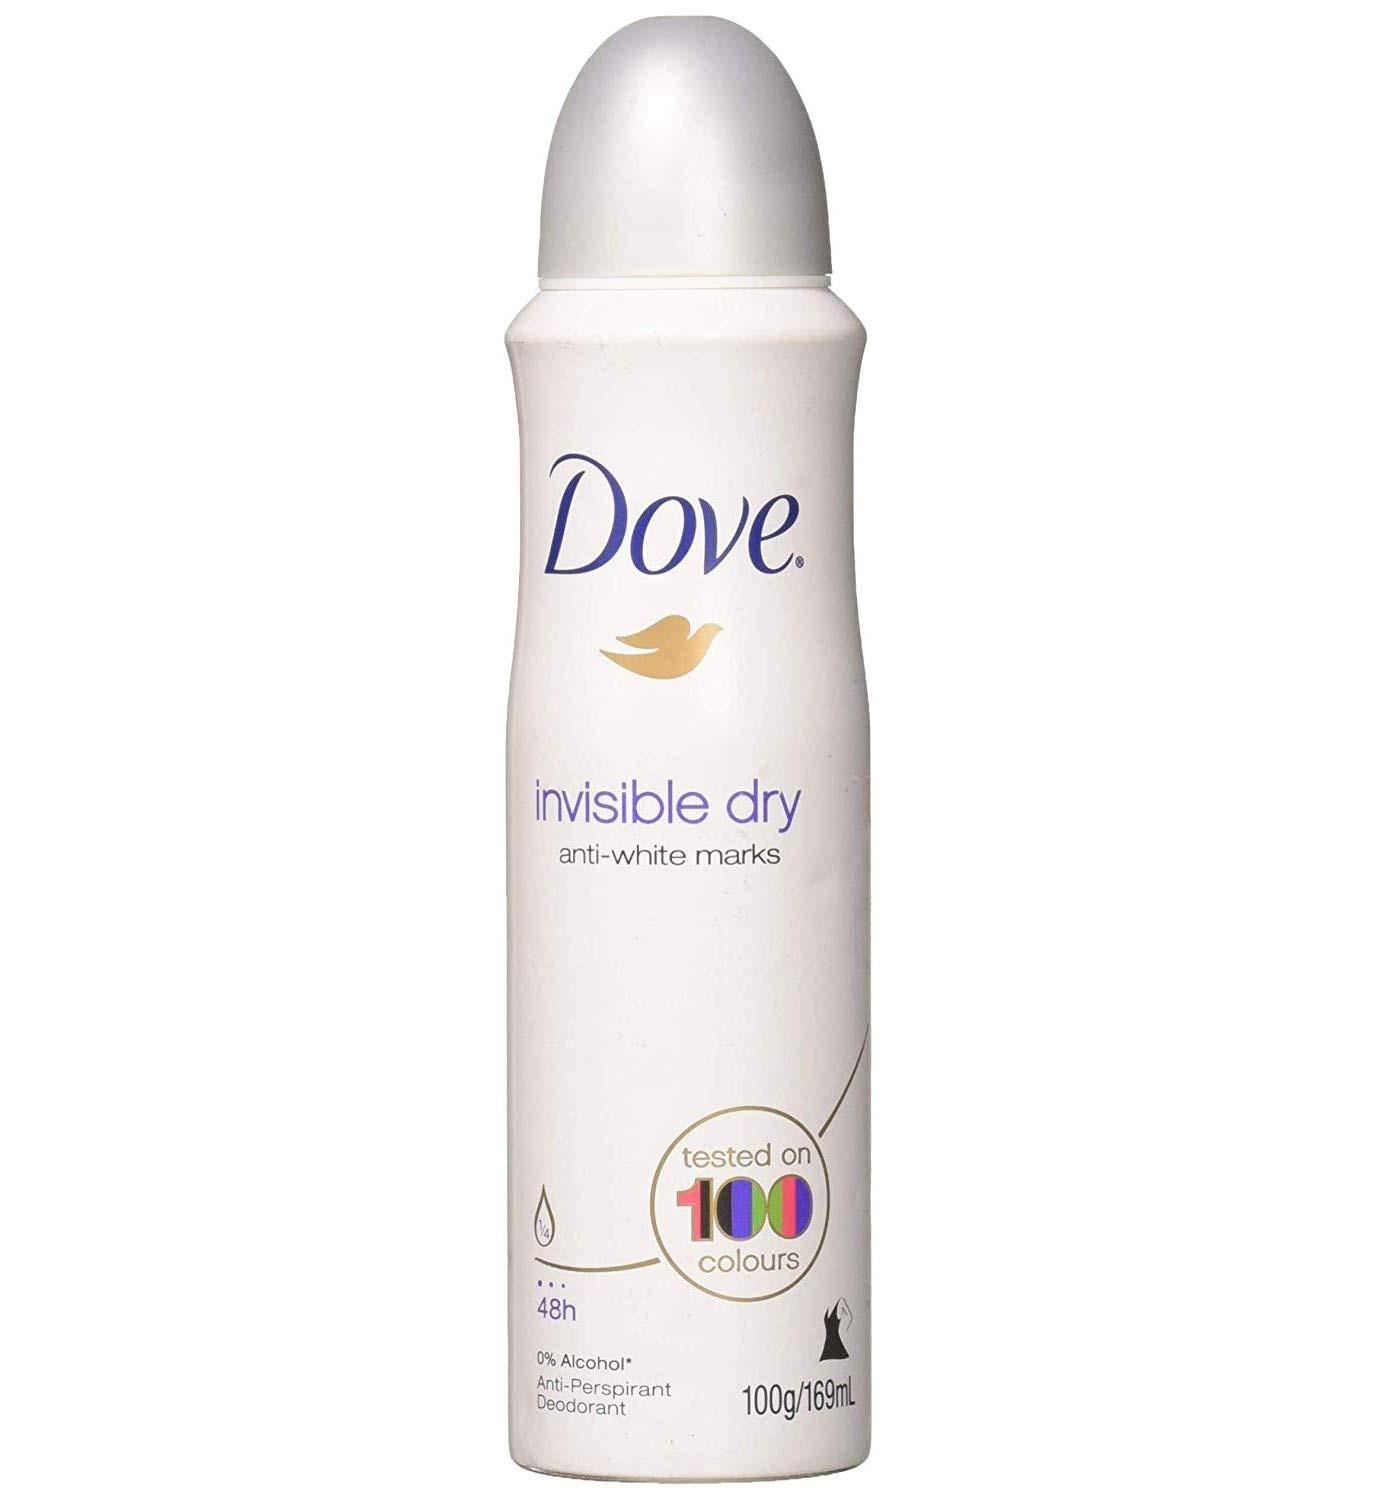 Dove Invisible Dry Antiperspirant Aerosol Deodorant - 150ml